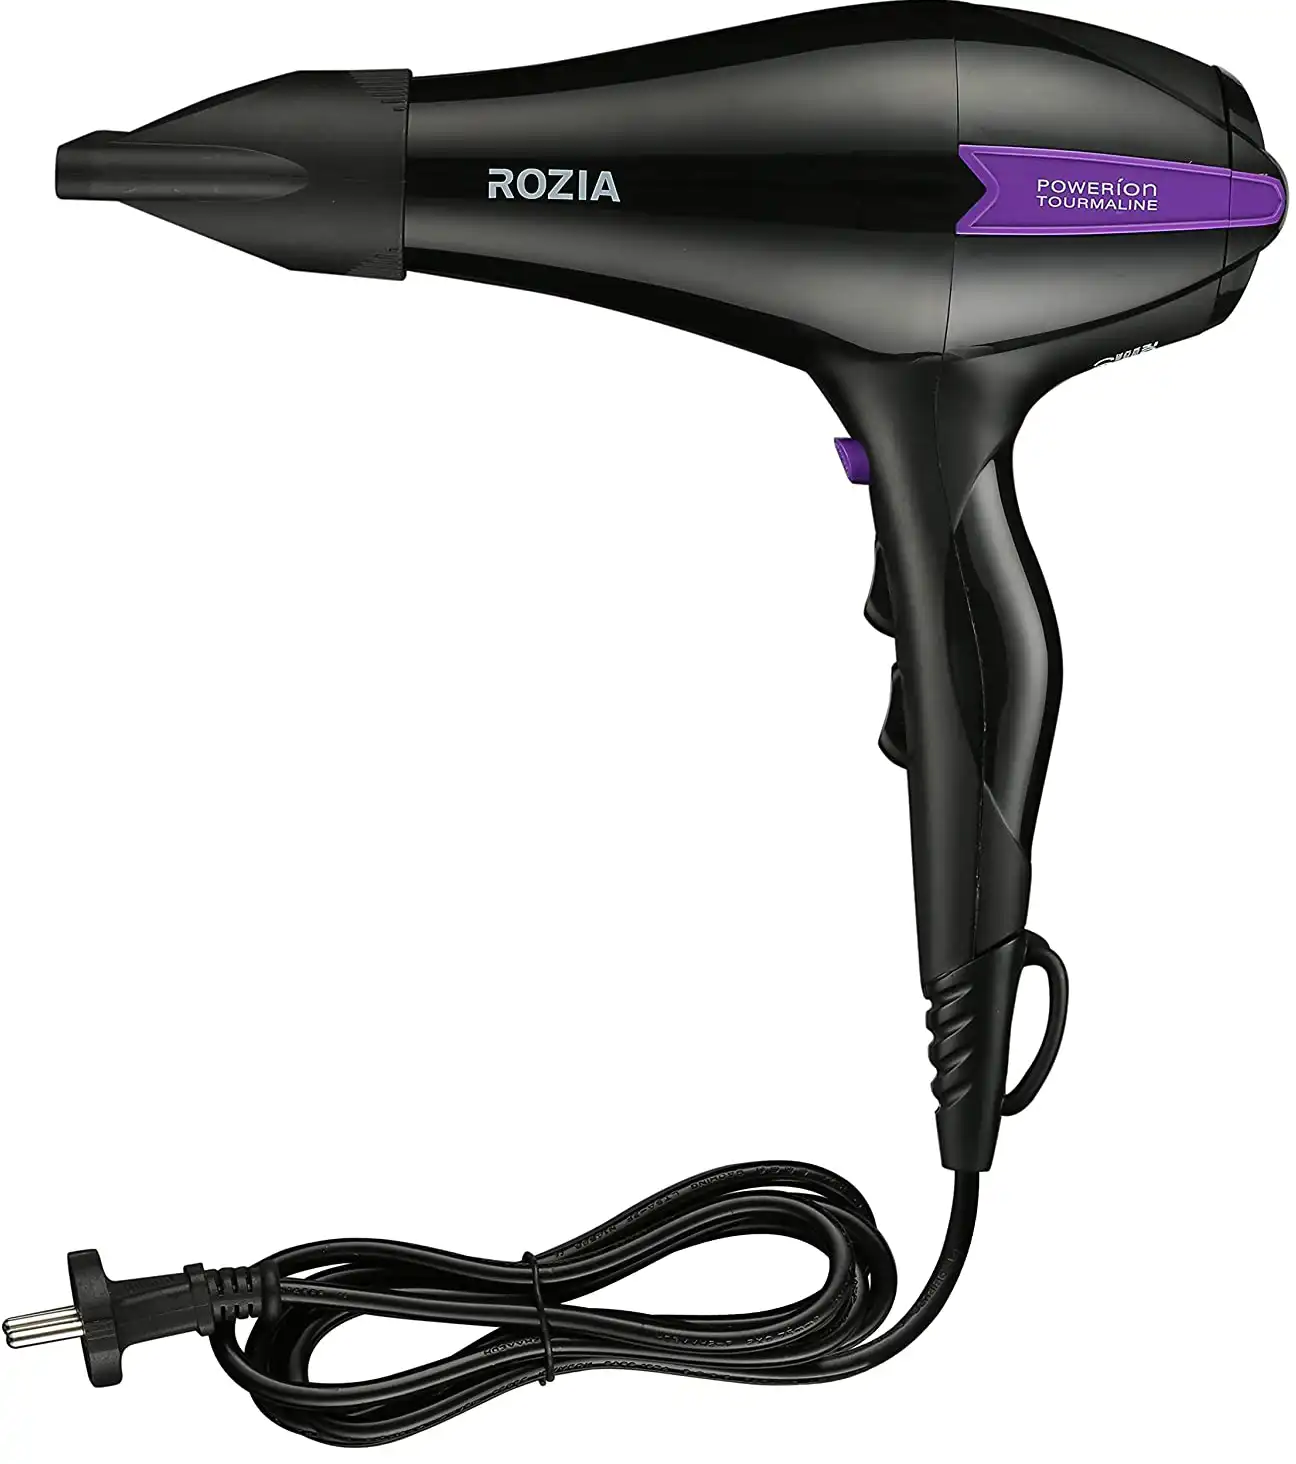 Rozia hair dryer, 2500 watts, 2 speeds, black, HC8508